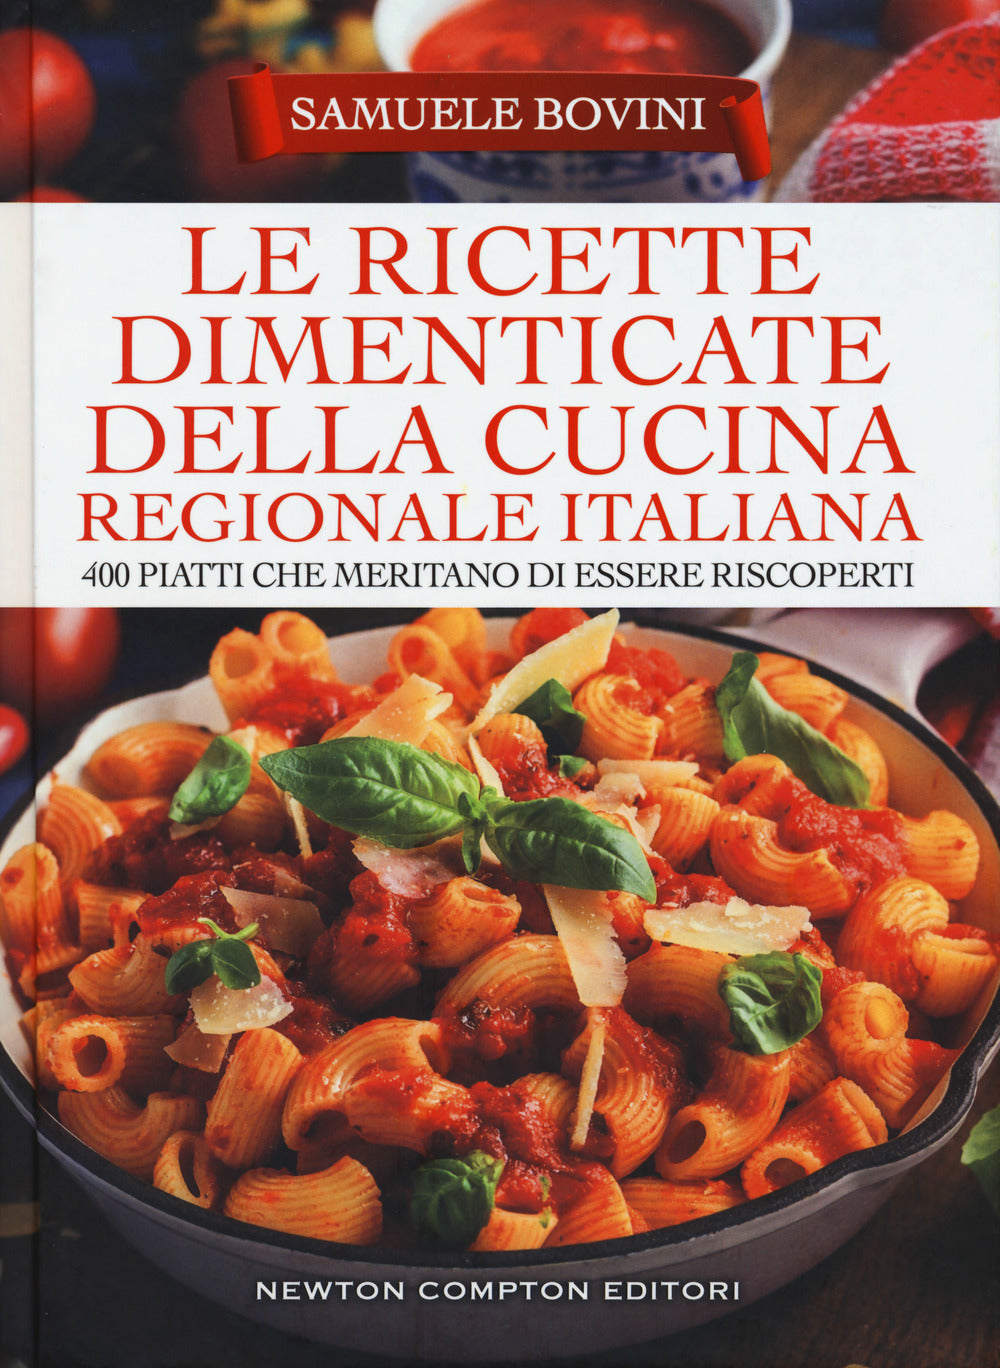 Le ricette dimenticate della cucina regionale italiana. 400 piatti che meritano di essere riscoperti.